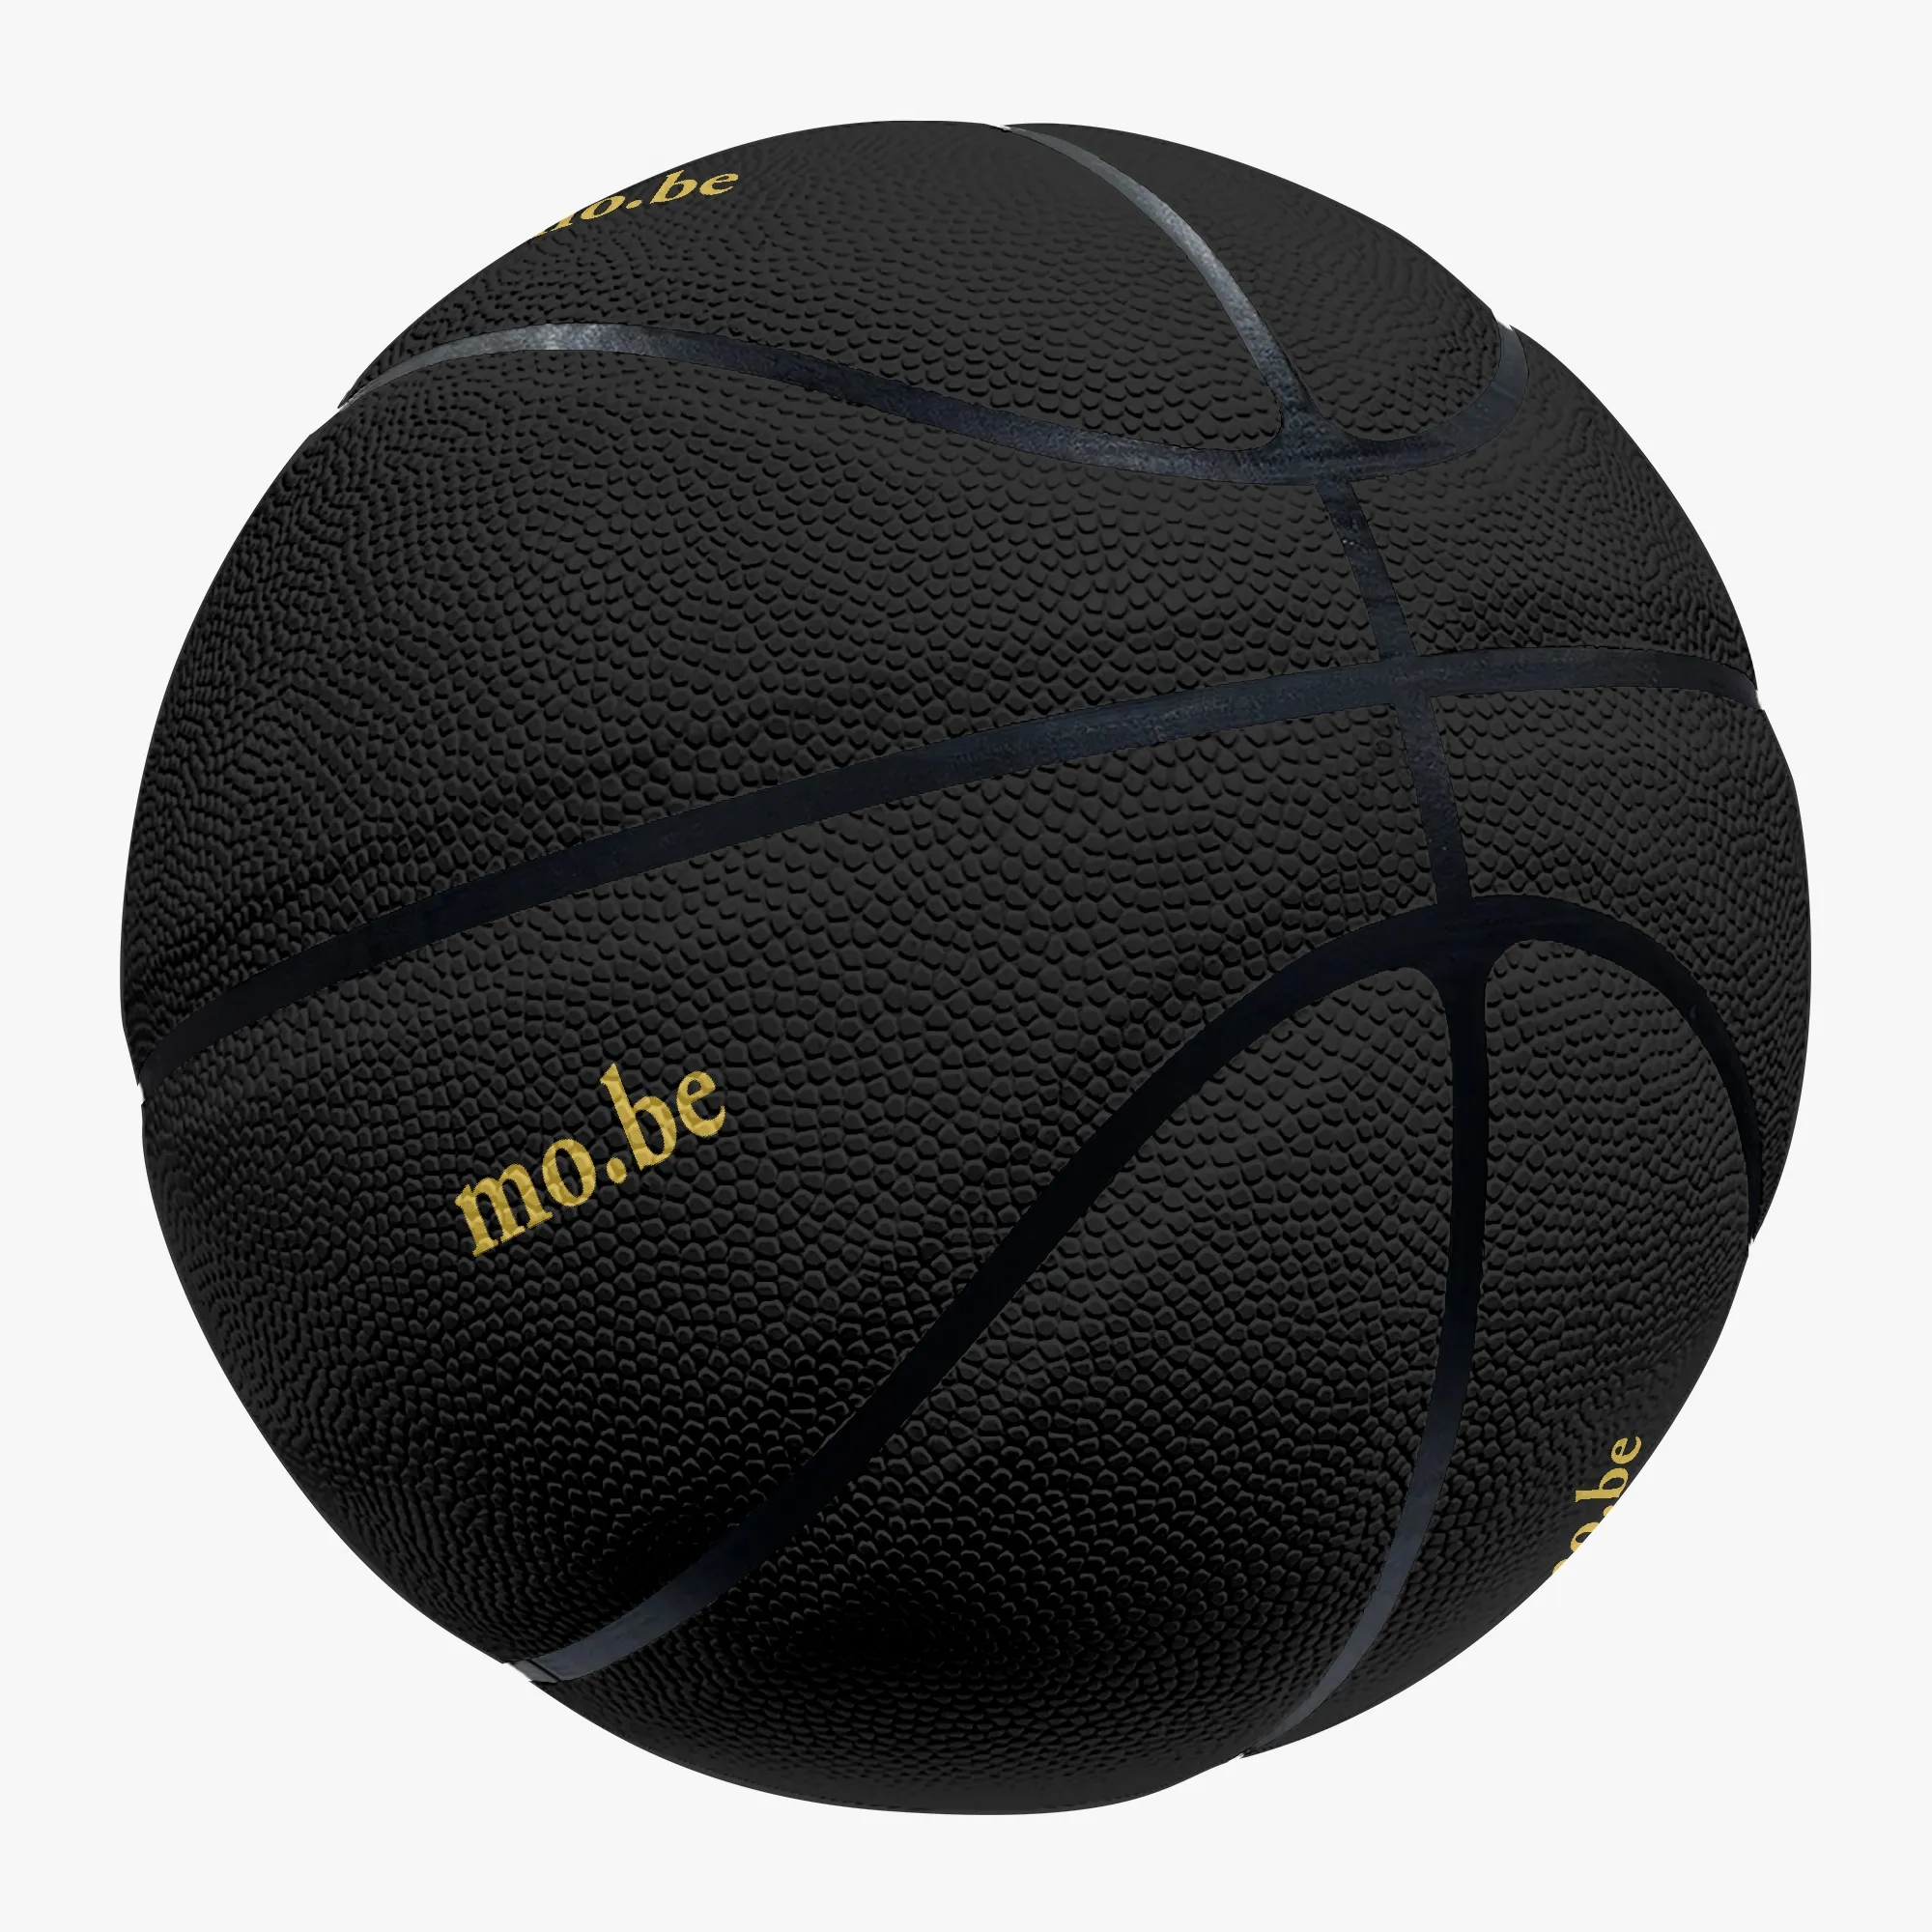 Basket-ball personnalisé bricolage basket-ball sports de plein air jeu de basket-ball équipement de formation d'équipe chaude ventes directes d'usine 103806